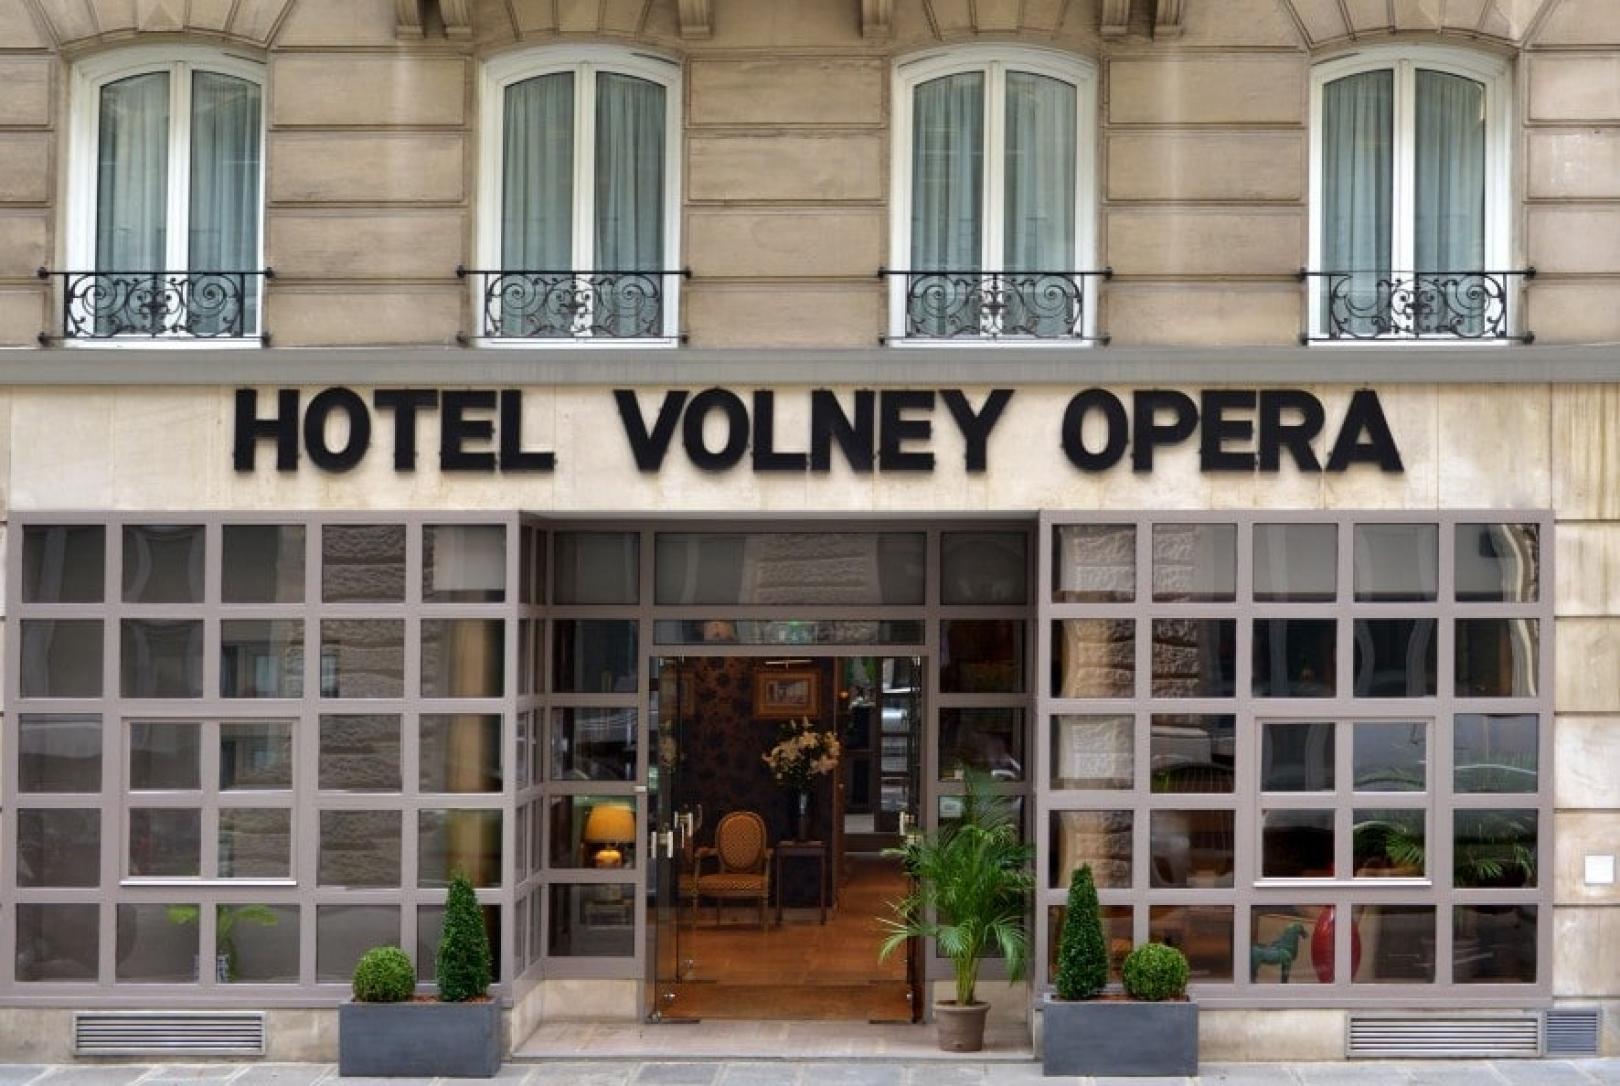 Hotel Volney Opéra - Frontage